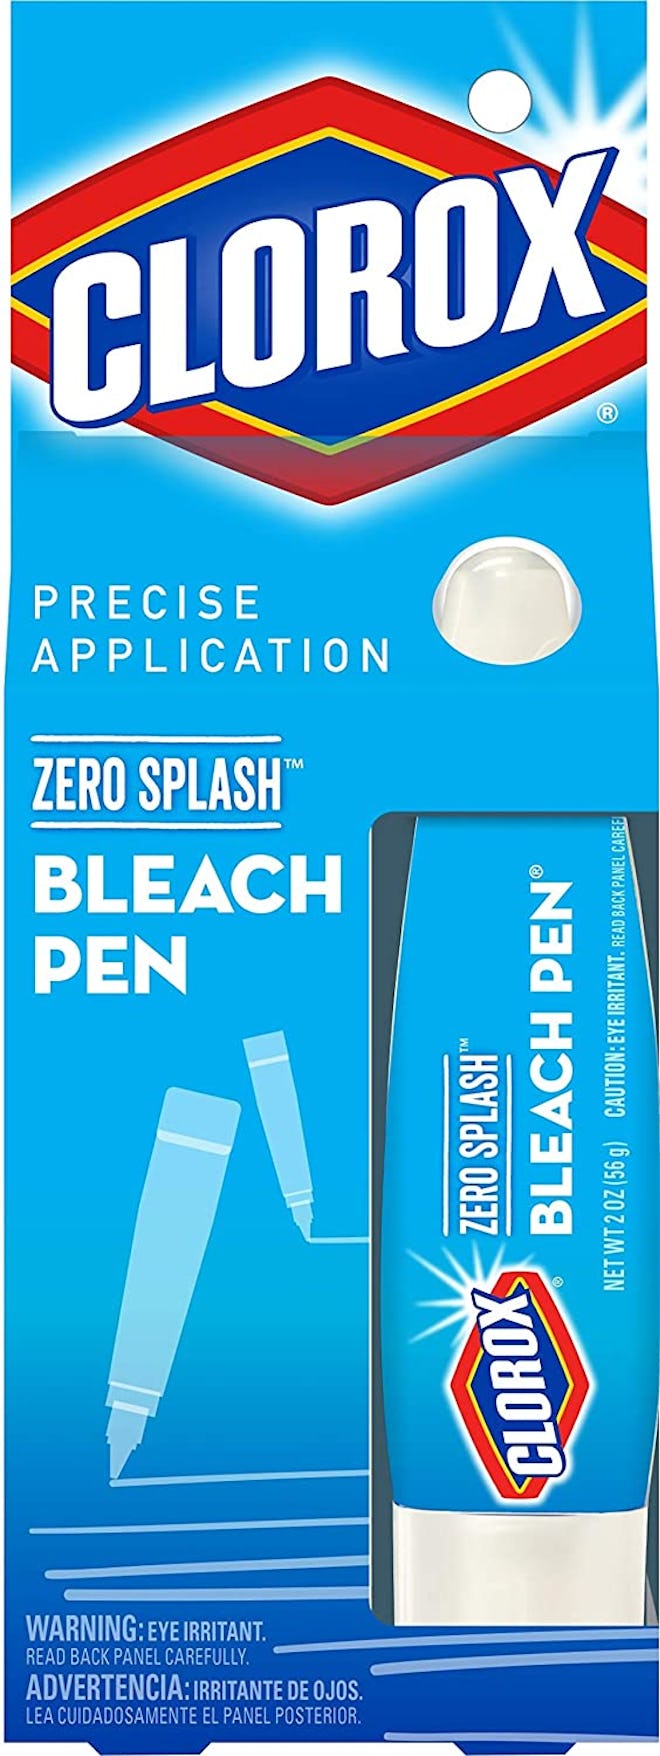 Clorox Zero Splash Bleach Pen (4-Pack)